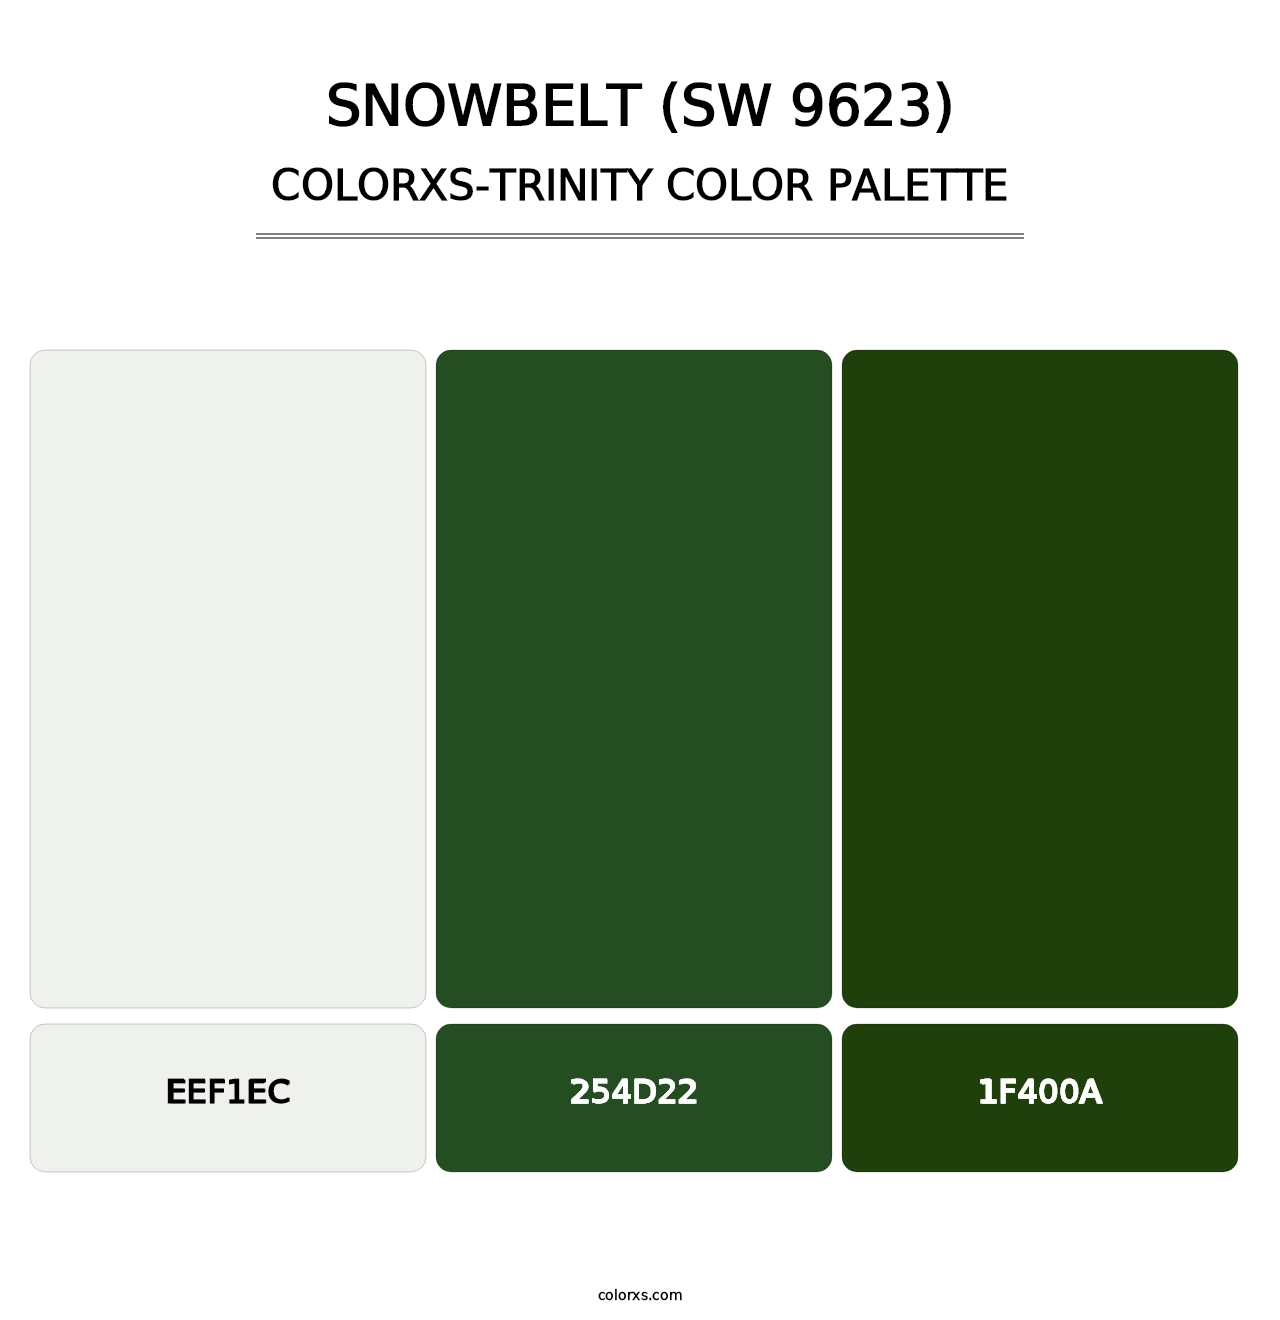 Snowbelt (SW 9623) - Colorxs Trinity Palette